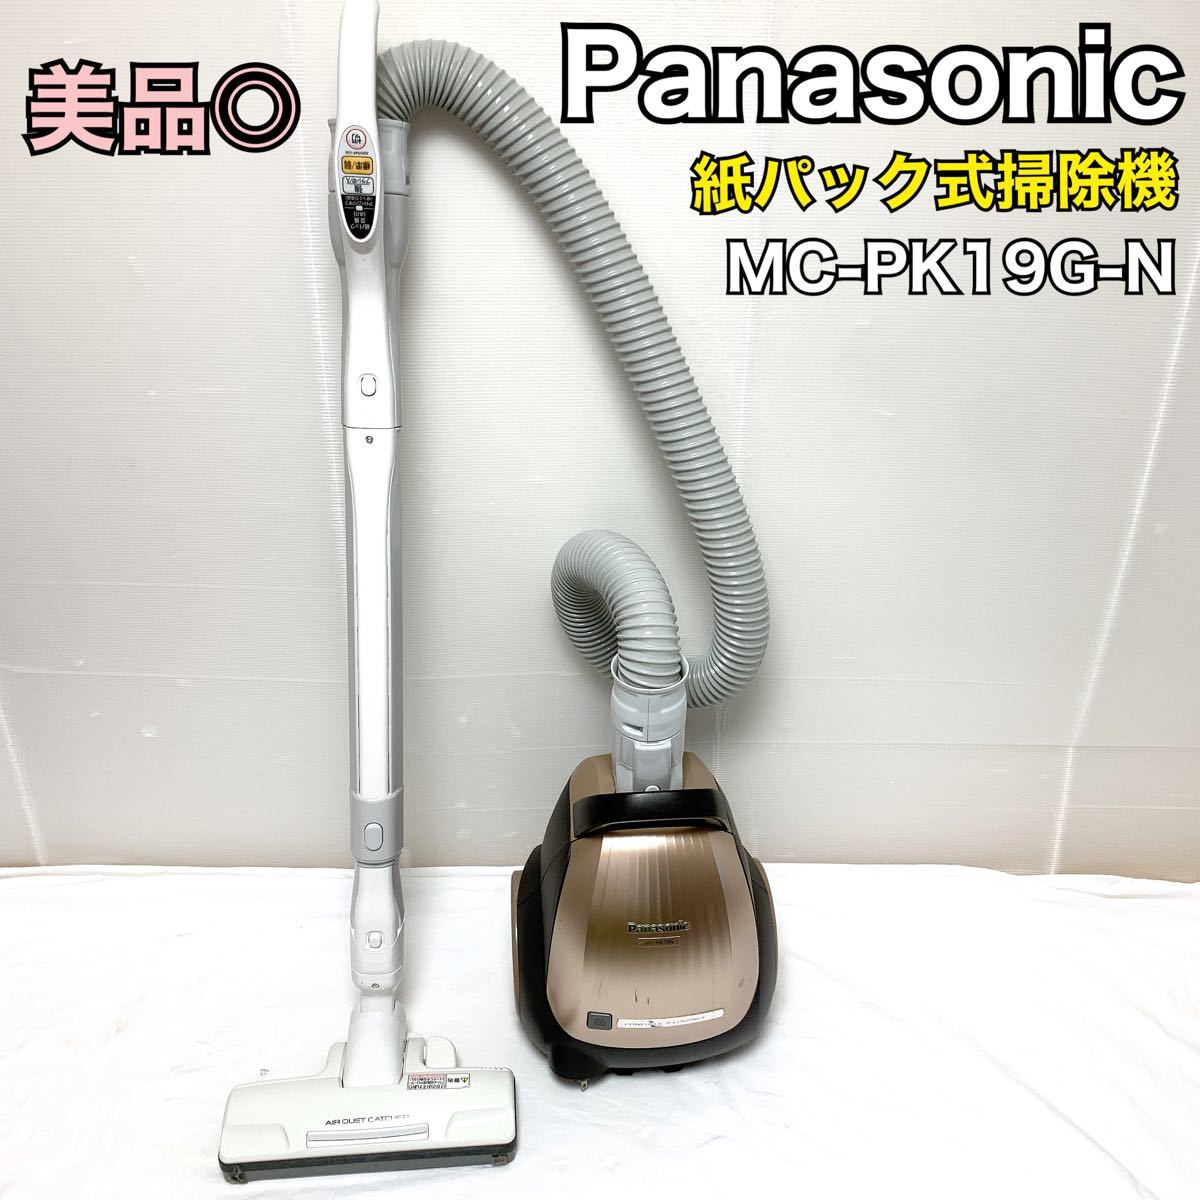 美品 掃除機 Panasonic MC-PK19G-N パナソニック ゴールド 紙パック式掃除機 クリーナー パナソニック